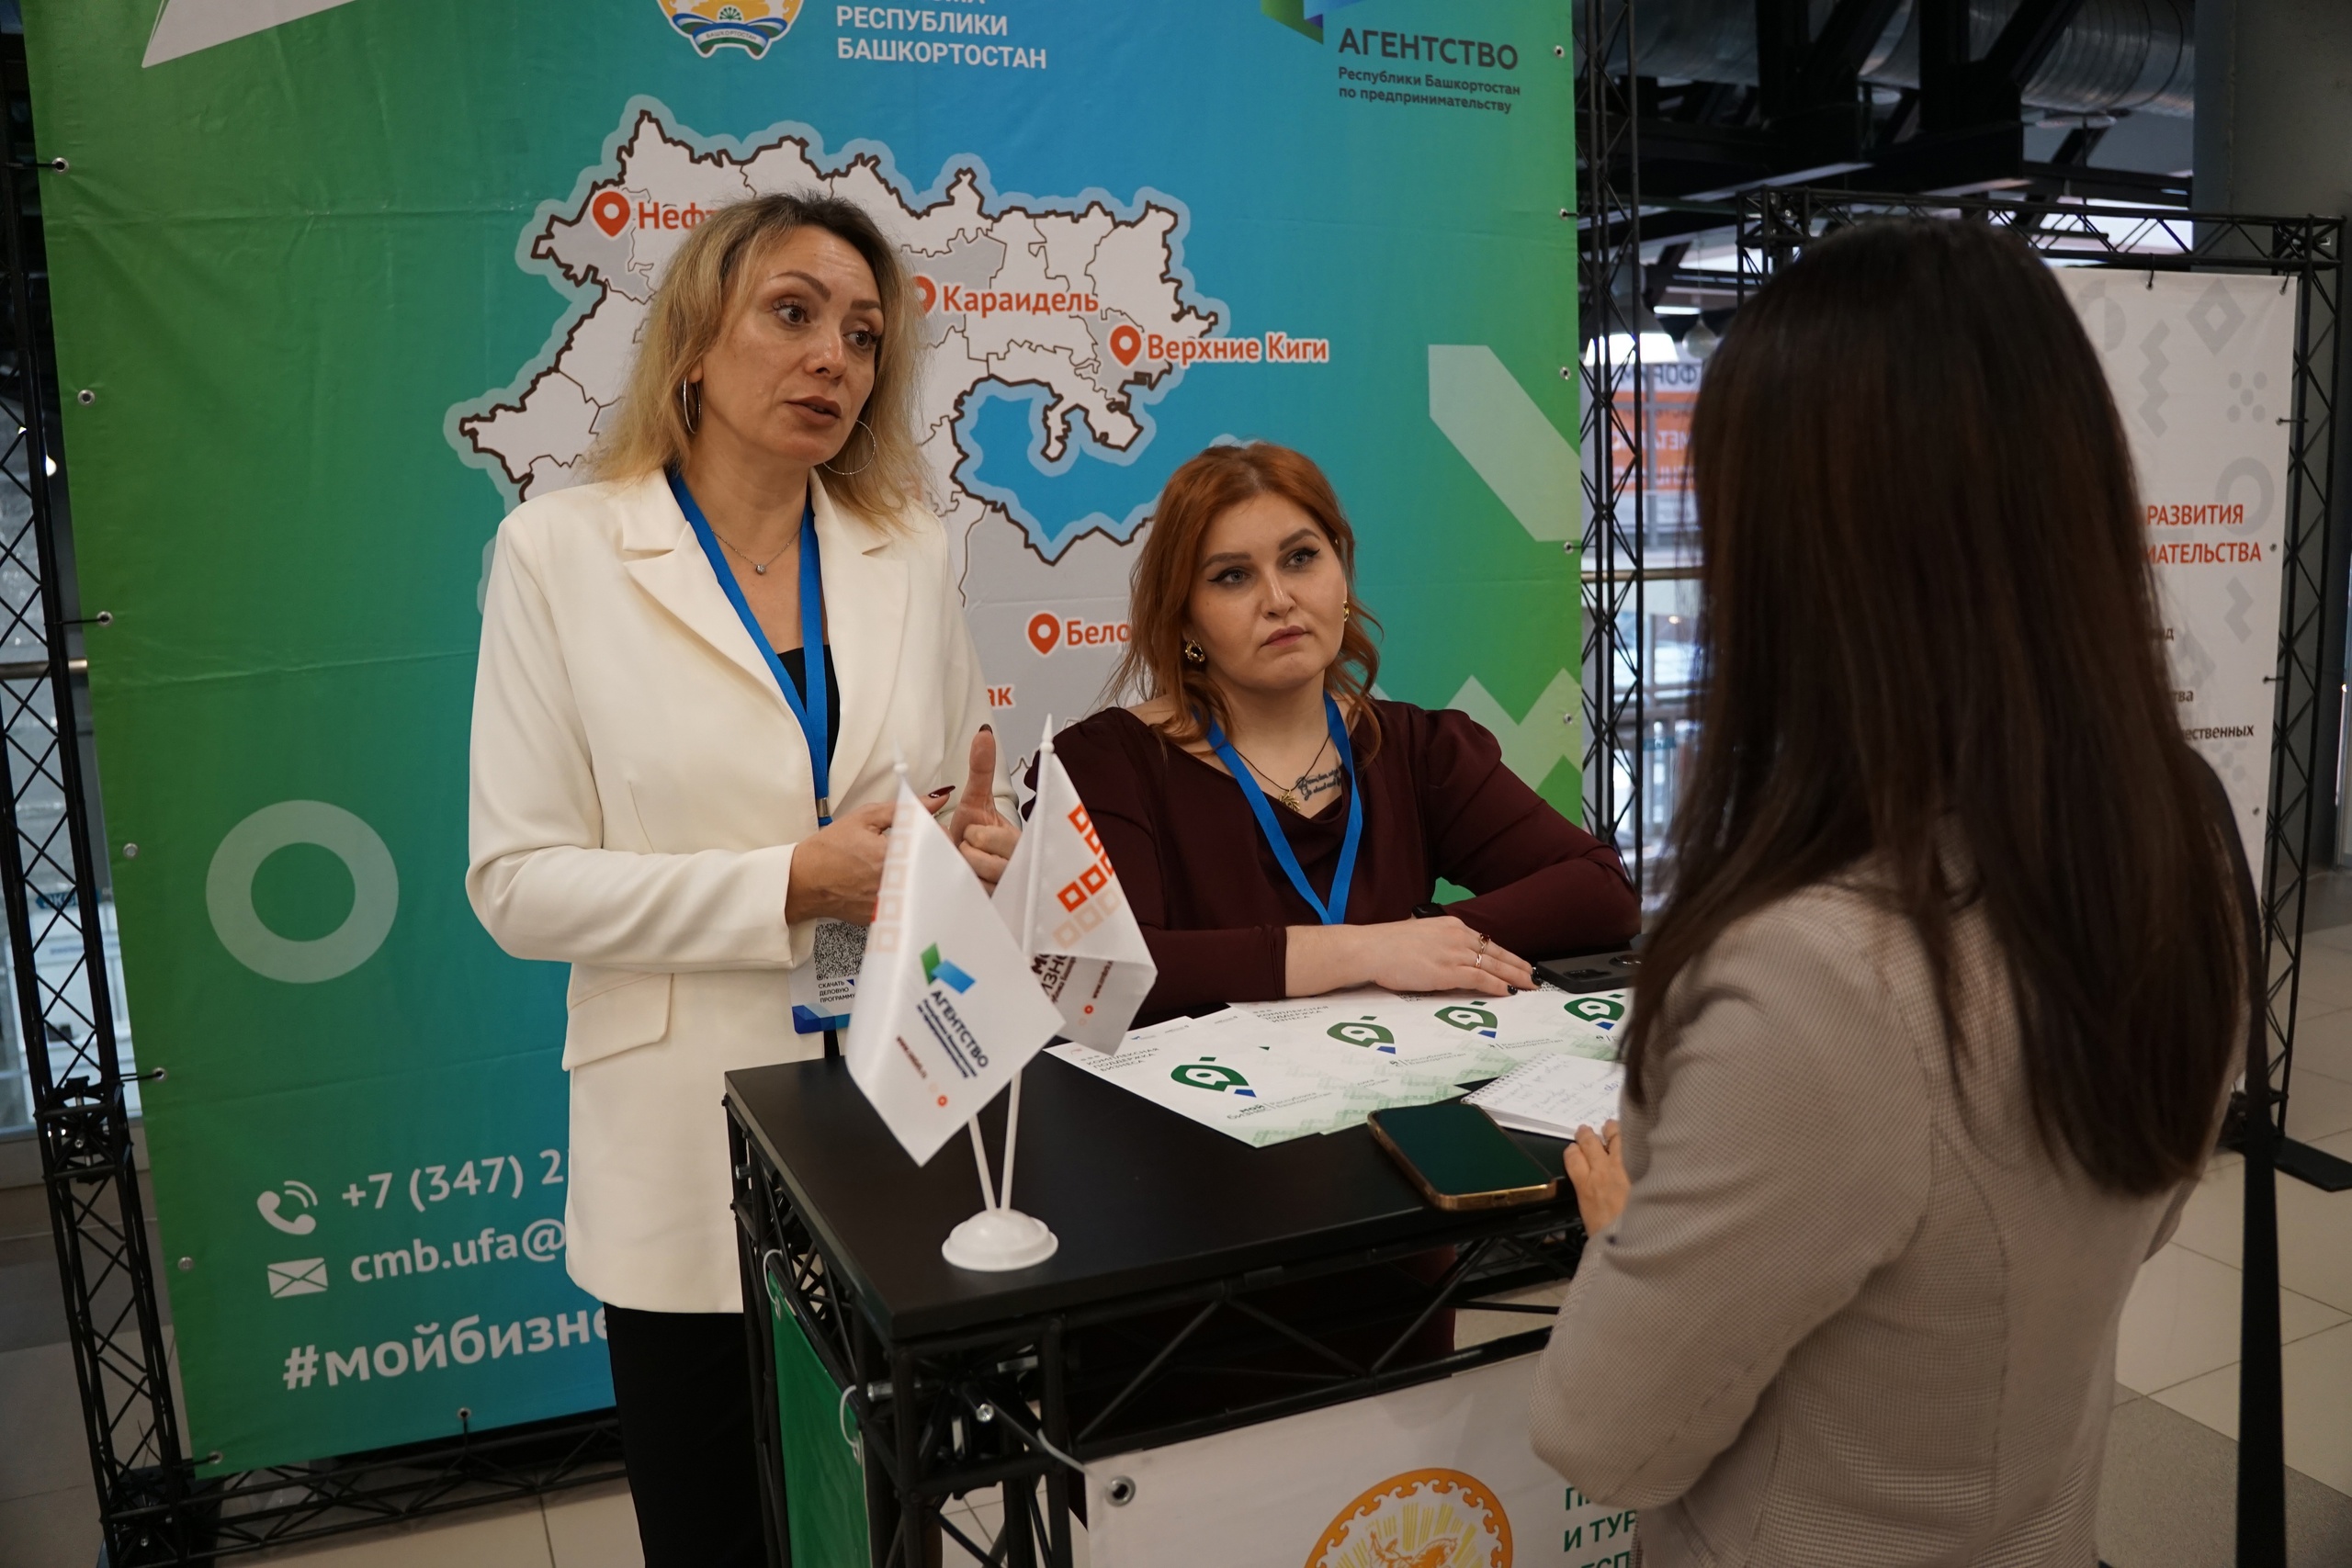 В 2023 году Центр «Мой бизнес» Башкортостана оказал предпринимателям региона более 12 тысяч услуг